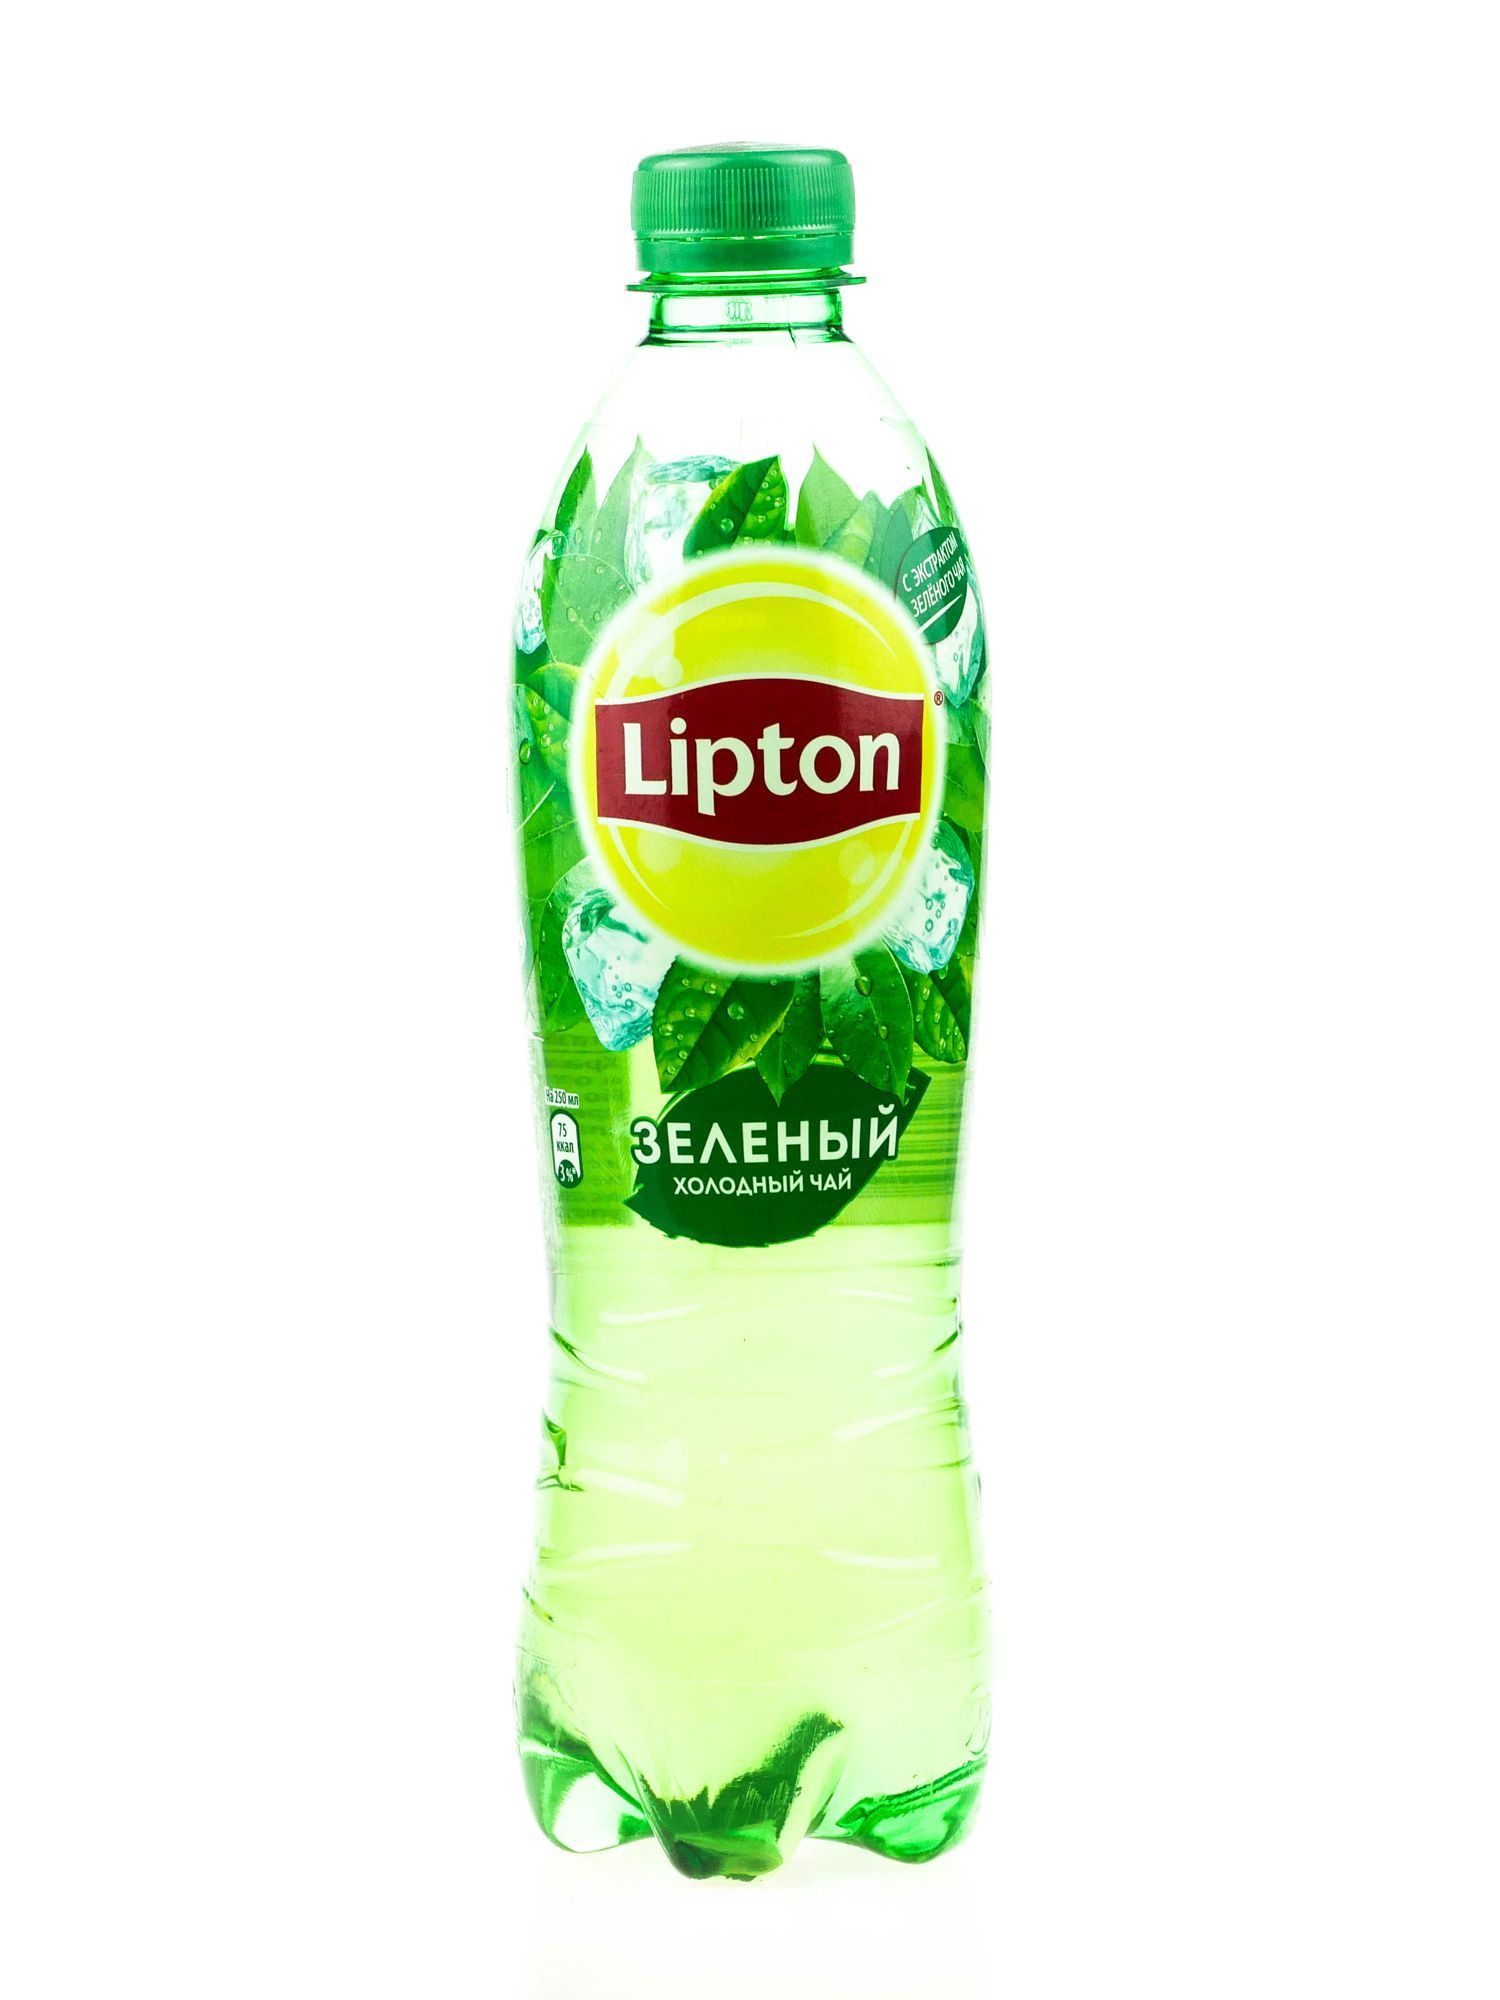 Липтон зеленый бутылка. Липтон зелёный холодный чай. Липтон холодный чай зеленый 0.5. Липтон зеленый чай 0.5. Чай Липтон 0.5.